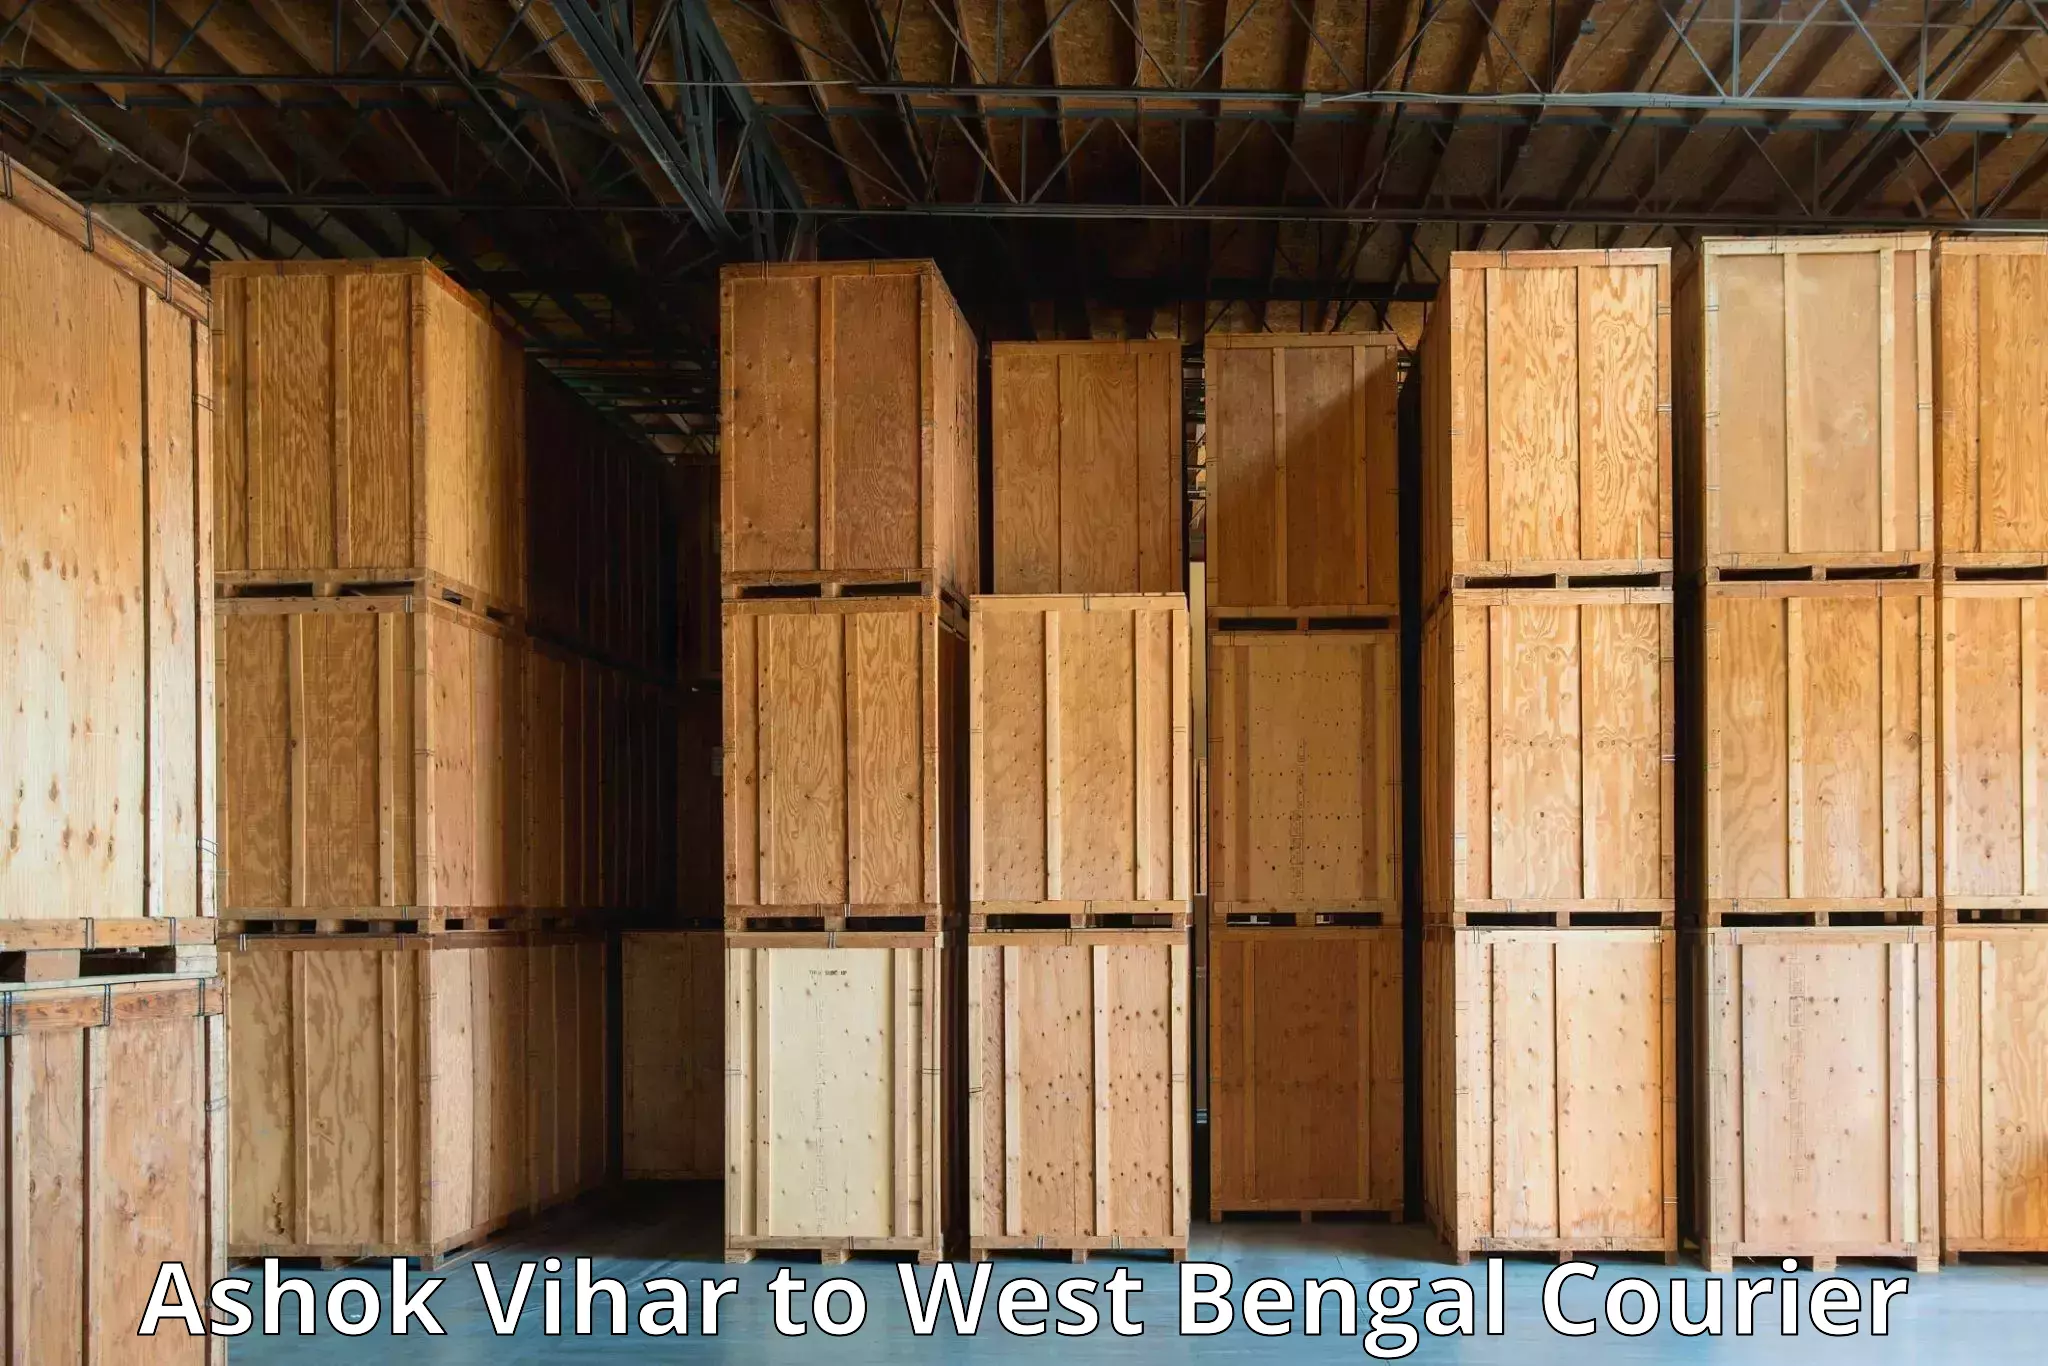 Customer-focused courier Ashok Vihar to Bara Bazar